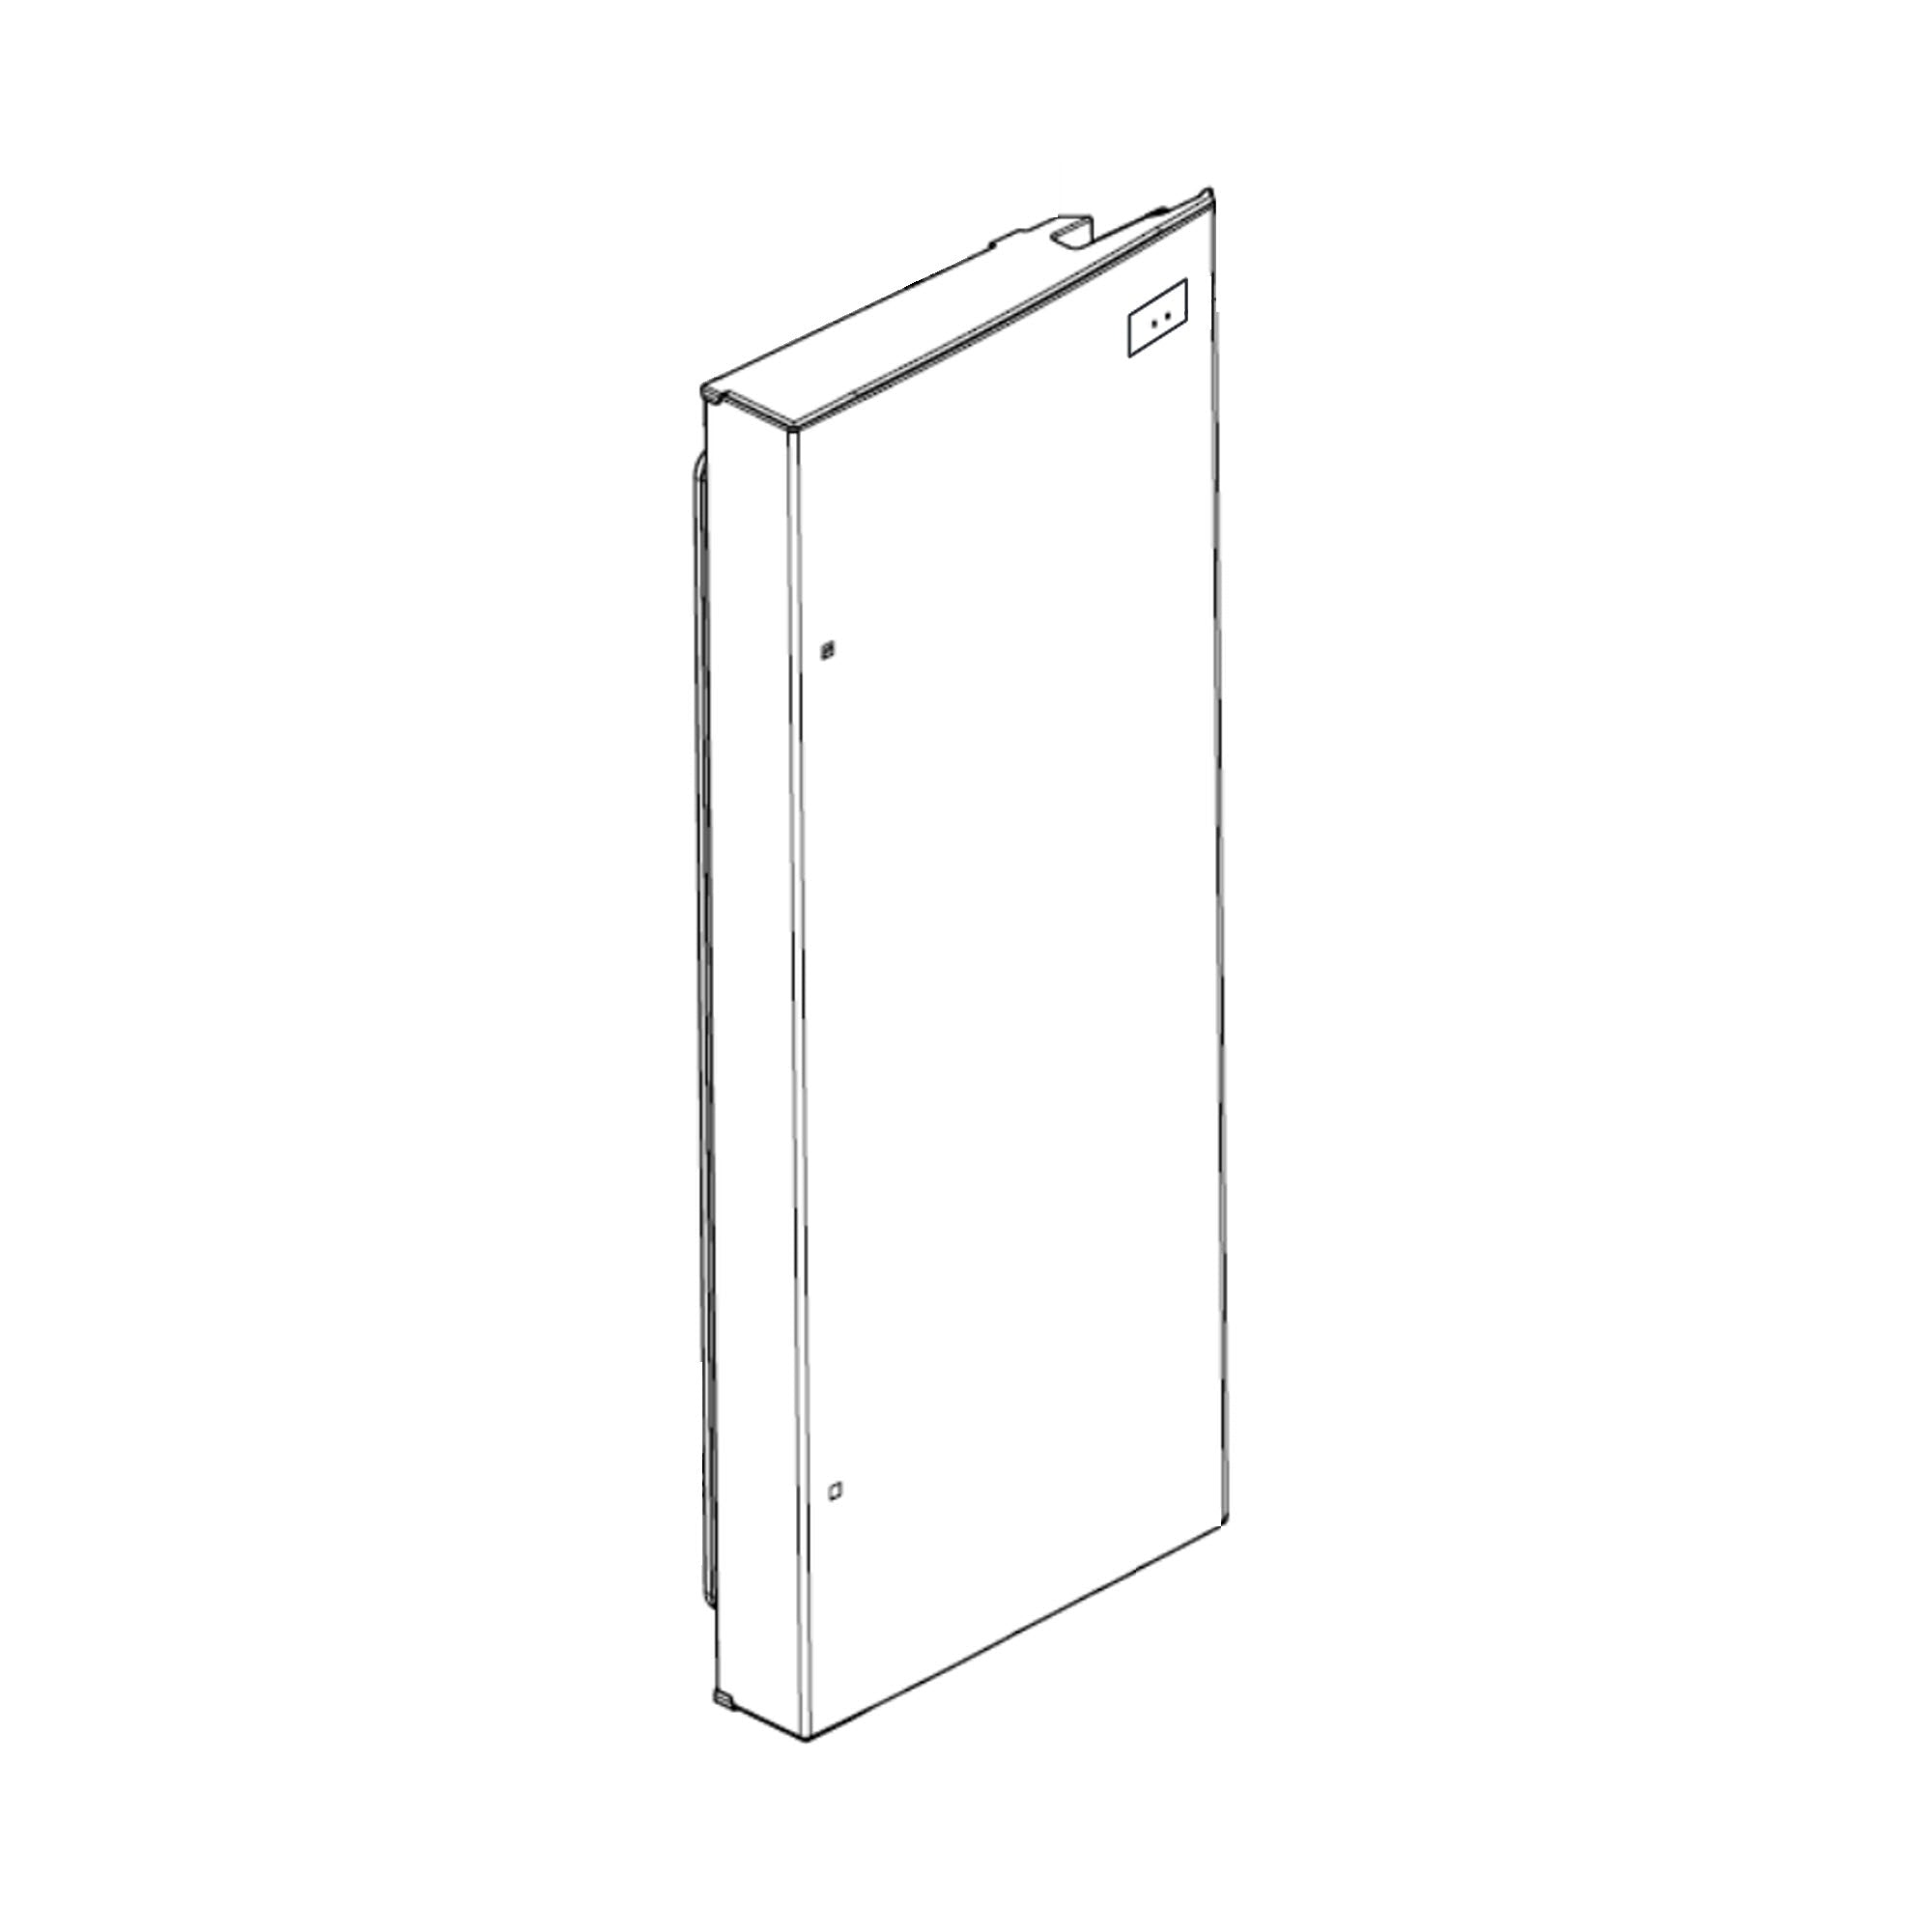 LG ADD74236515 Refrigerator Door Foam Assembly